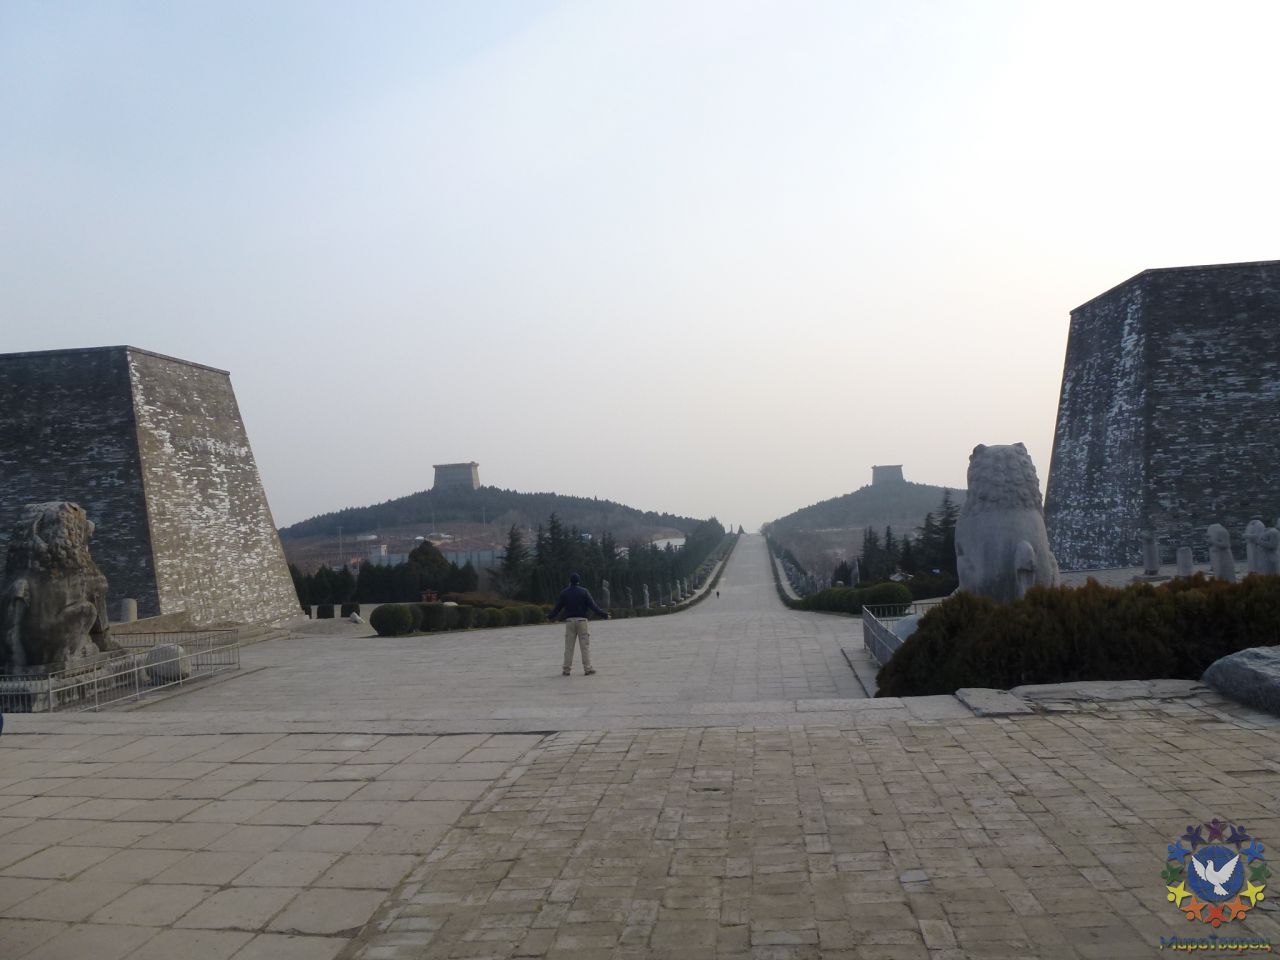 Грандиозный комплекс Qianling занимает площадь в 2,3 миллиона квадратных метров с воротами по четырем сторонам света: Алые ворота Птиц на юге,  ворота Черепахи на севере,  ворота Синего Дракона на востоке и ворота Белого Тигра  на западе.  «Я есьмь здесь и сейчас.» - Китай, Декабрь, 2011 часть 2